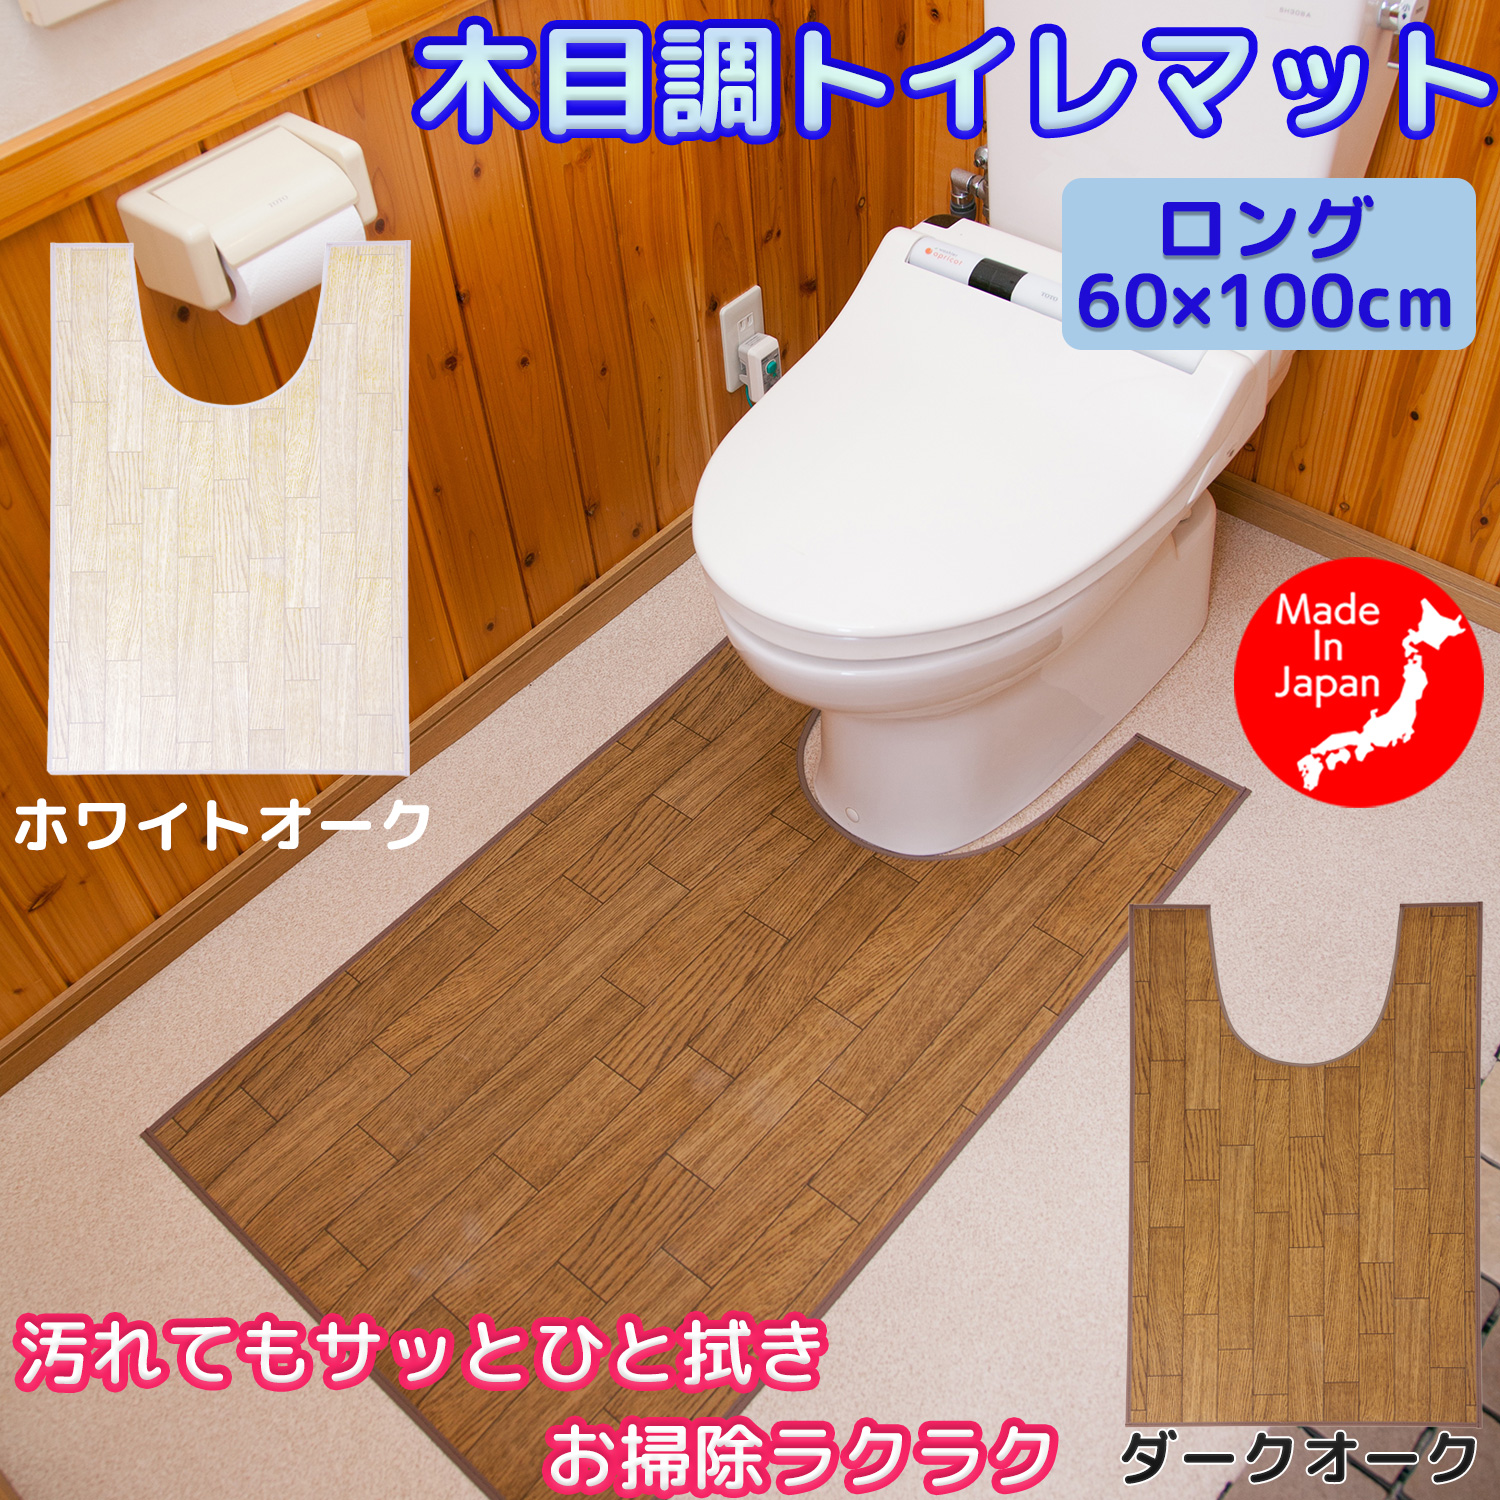 日本製 トイレマット 拭ける フローリング調 60×100cm - 木目調トイレマット ロング ビニール製 ナチュラル ブラウン ベージュ 汚れ防止 防水 単品